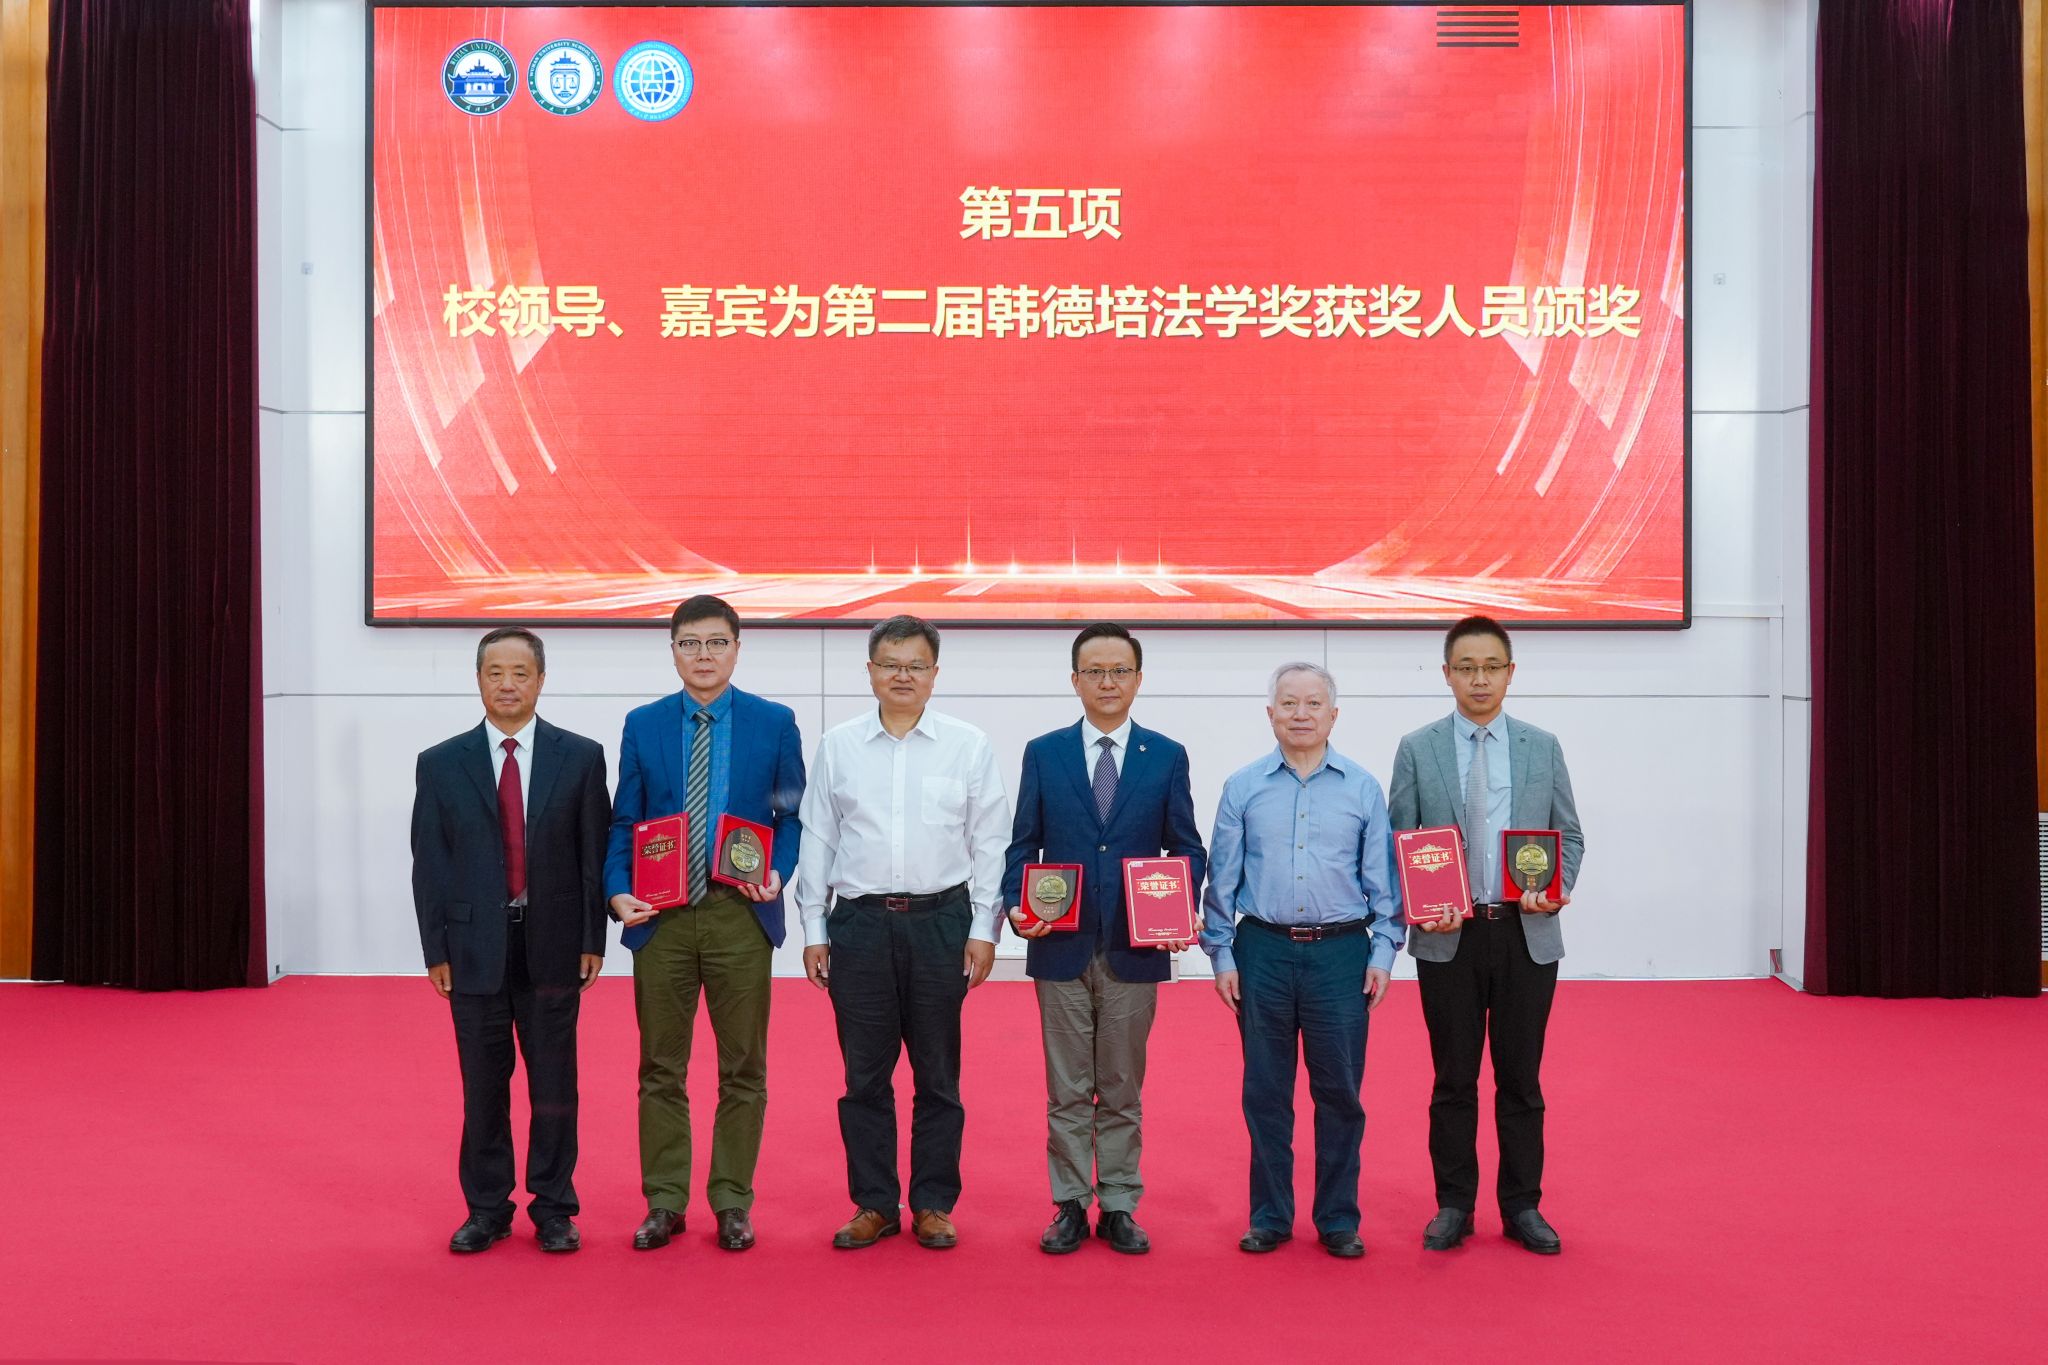 第二届、第三届韩德培法学奖颁奖典礼在武汉大学举行